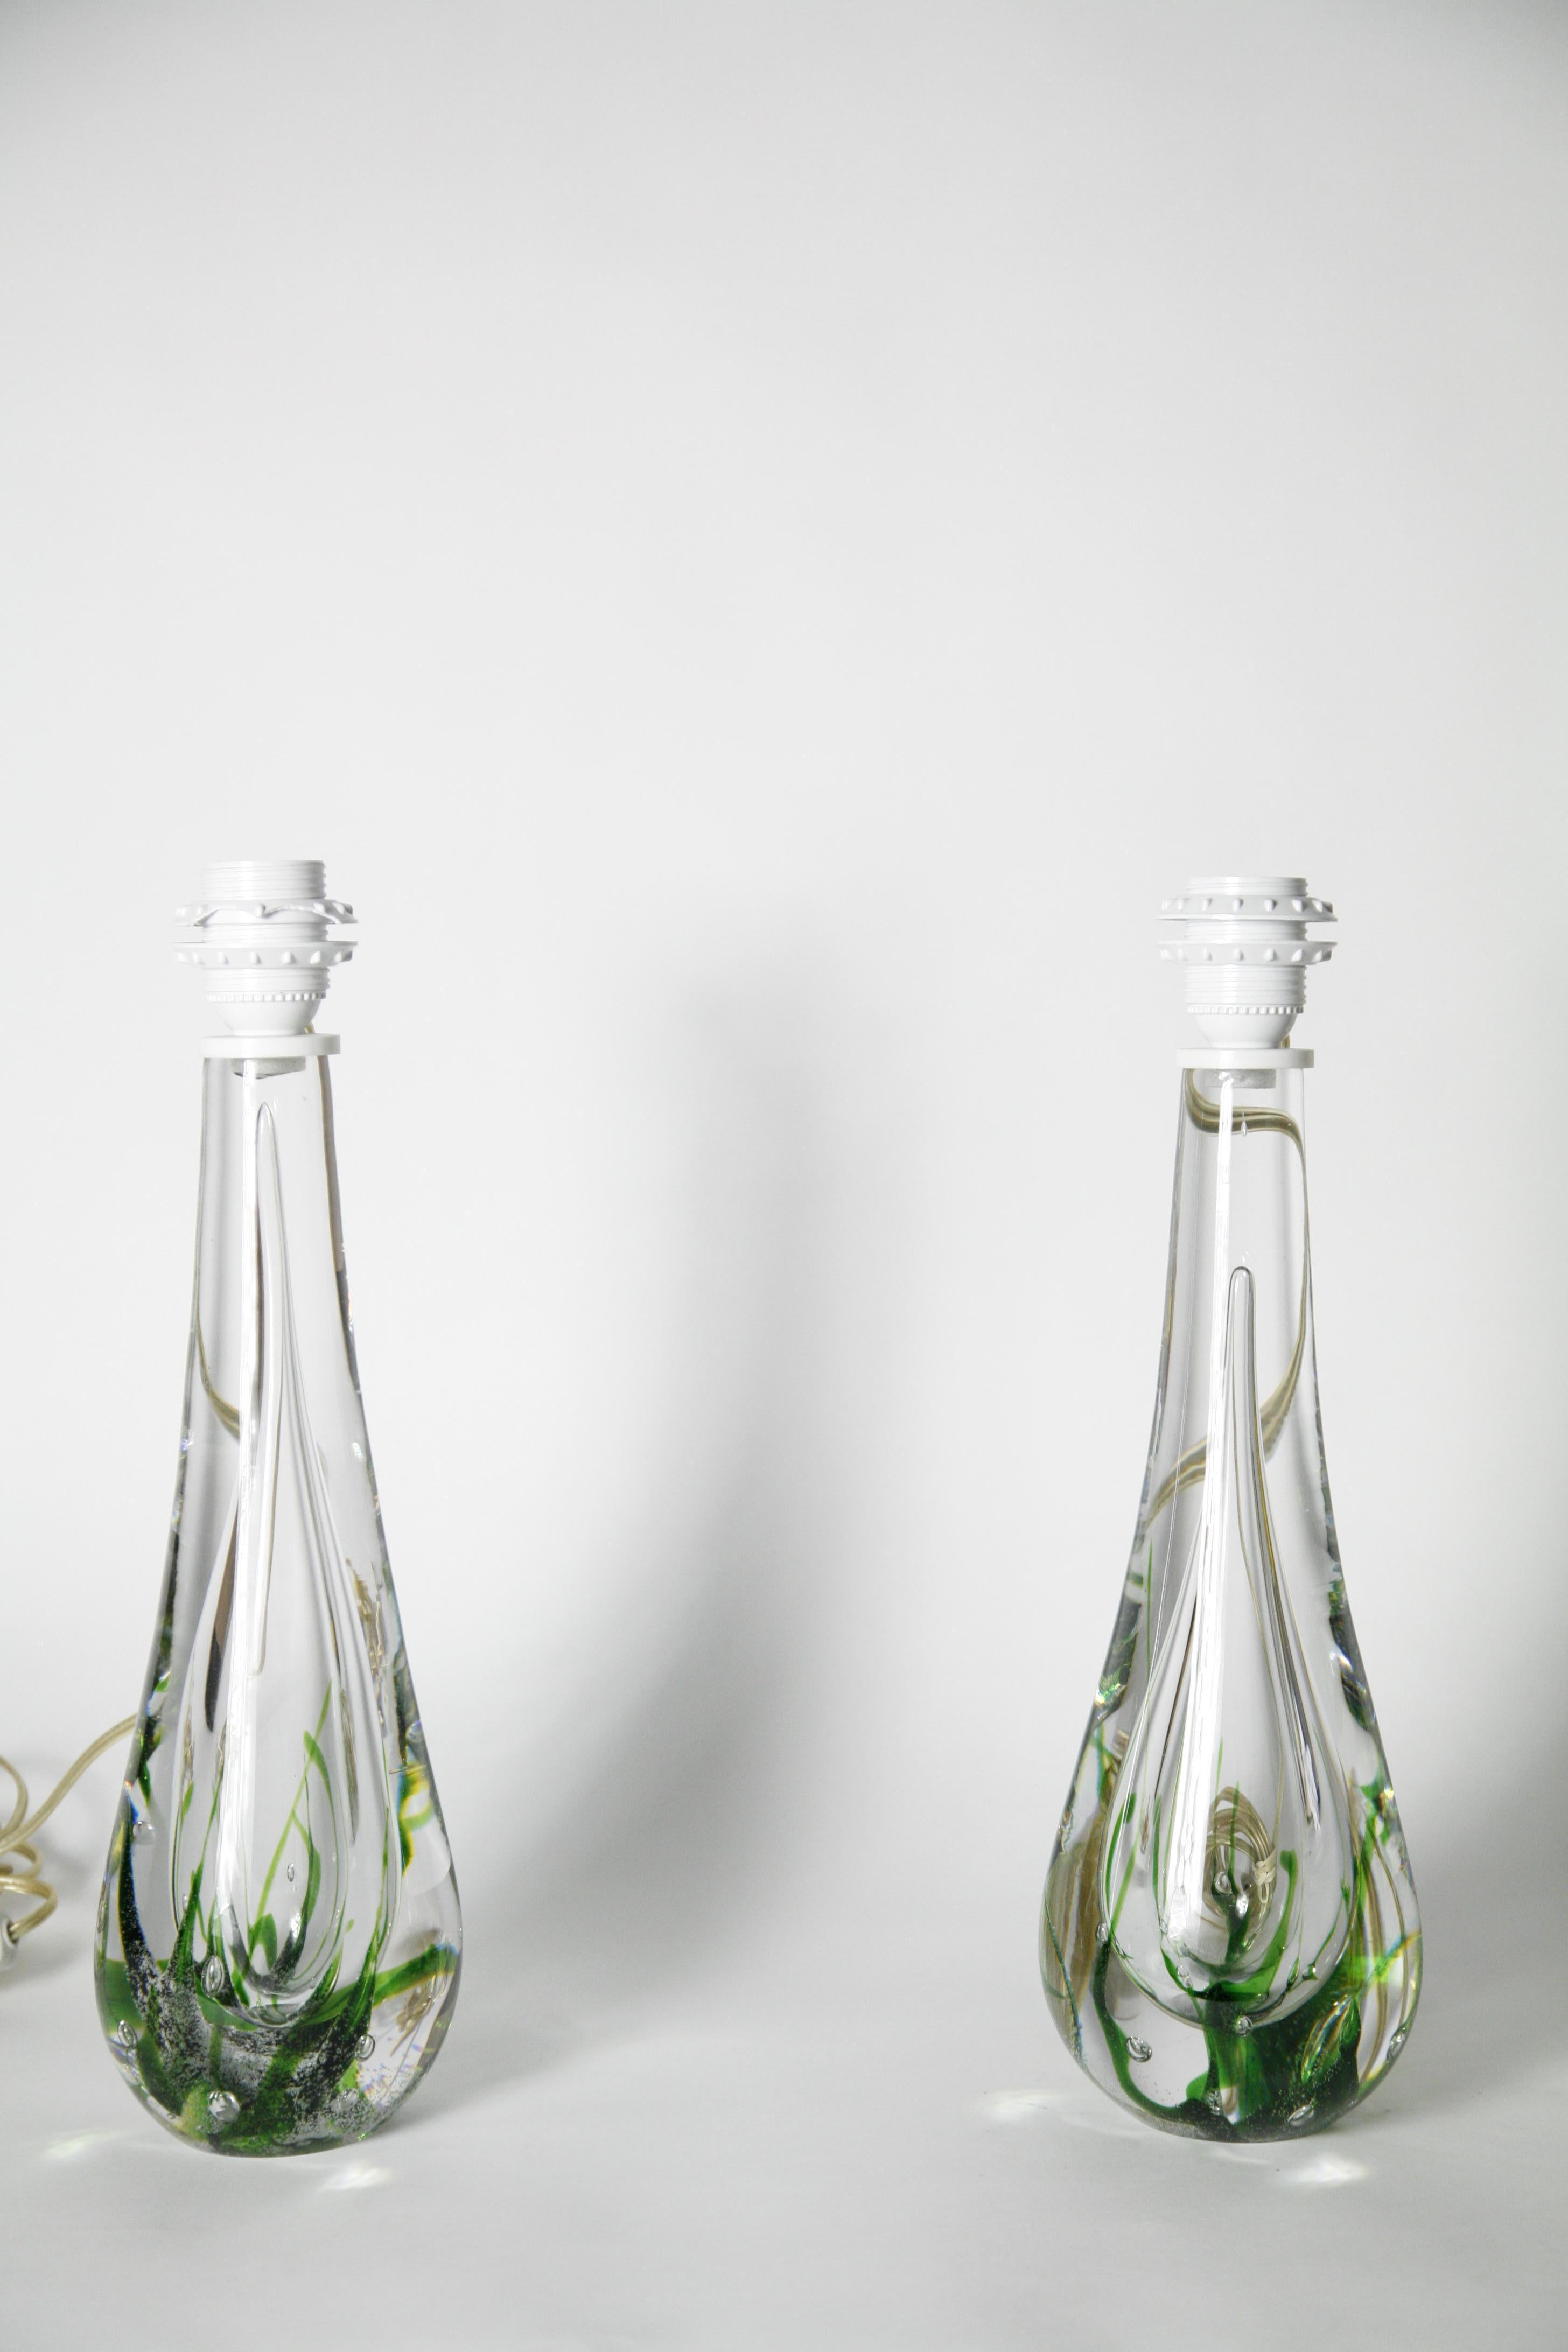 Paire de lampes en verre clair conçu par Vicke lindstrand produit par le verrier suédois Kosta 1980 Suède signé cristal clair avec des bulles d'air et des tourbillons de verre vert à l'intérieur du verre lourdes bases solides. 
La mesure ne concerne